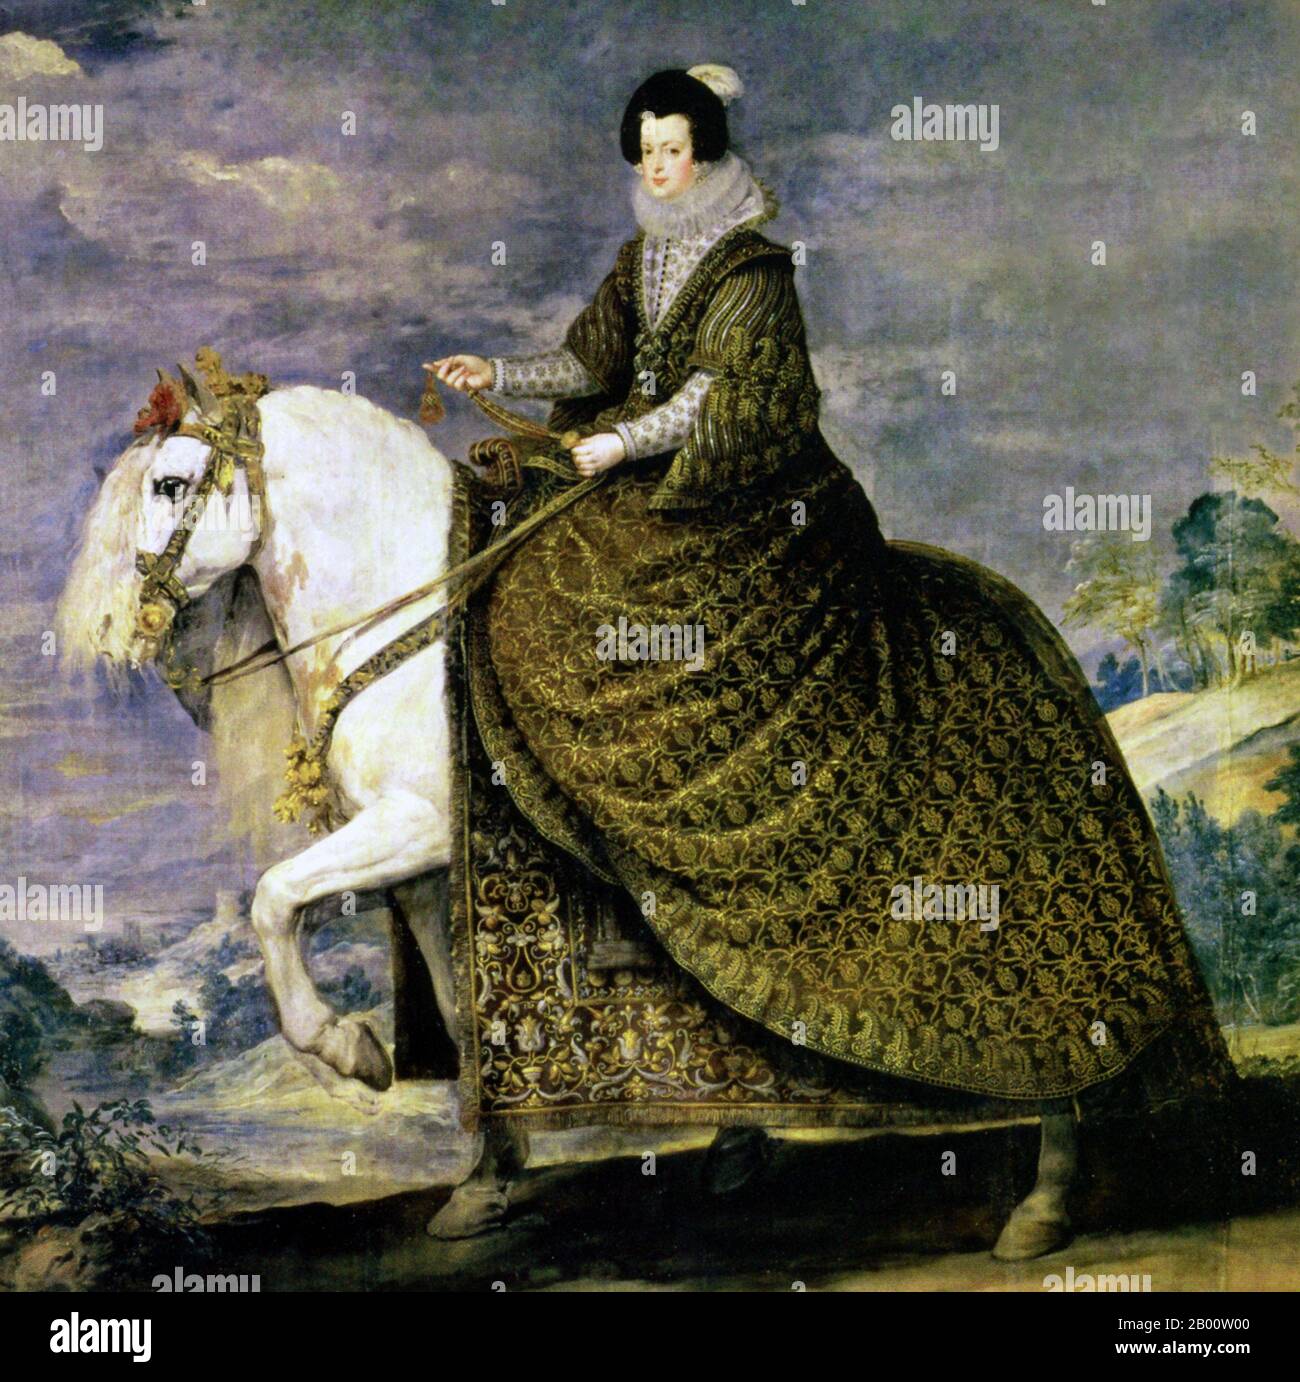 Spanien/ Frankreich/ Maghreb: Isabel von Bourbon wird auf einem andalusischen Pferd dargestellt. Öl auf Leinwand Gemälde von Diego Velazquez (1599-1660), c. 1635. Isabella von Bourbon/Elisabeth von Frankreich (1602-1644) war Königin Consort von Spanien und Portugal, und war mit König Philipp V. von Spanien verheiratet. Sie diente kurz als Regentin während der katalanischen Revolte in den Jahren 1640-1642, und wieder in den Jahren 1643-1644. Das andalusische Pferd war eine Kreuzung der nordafrikanischen Barbe und des spanischen Pferdes, das am Umayyaden-Hof in Cordoba entwickelt wurde und das bevorzugte Reittier vieler europäischer Könige war. Stockfoto